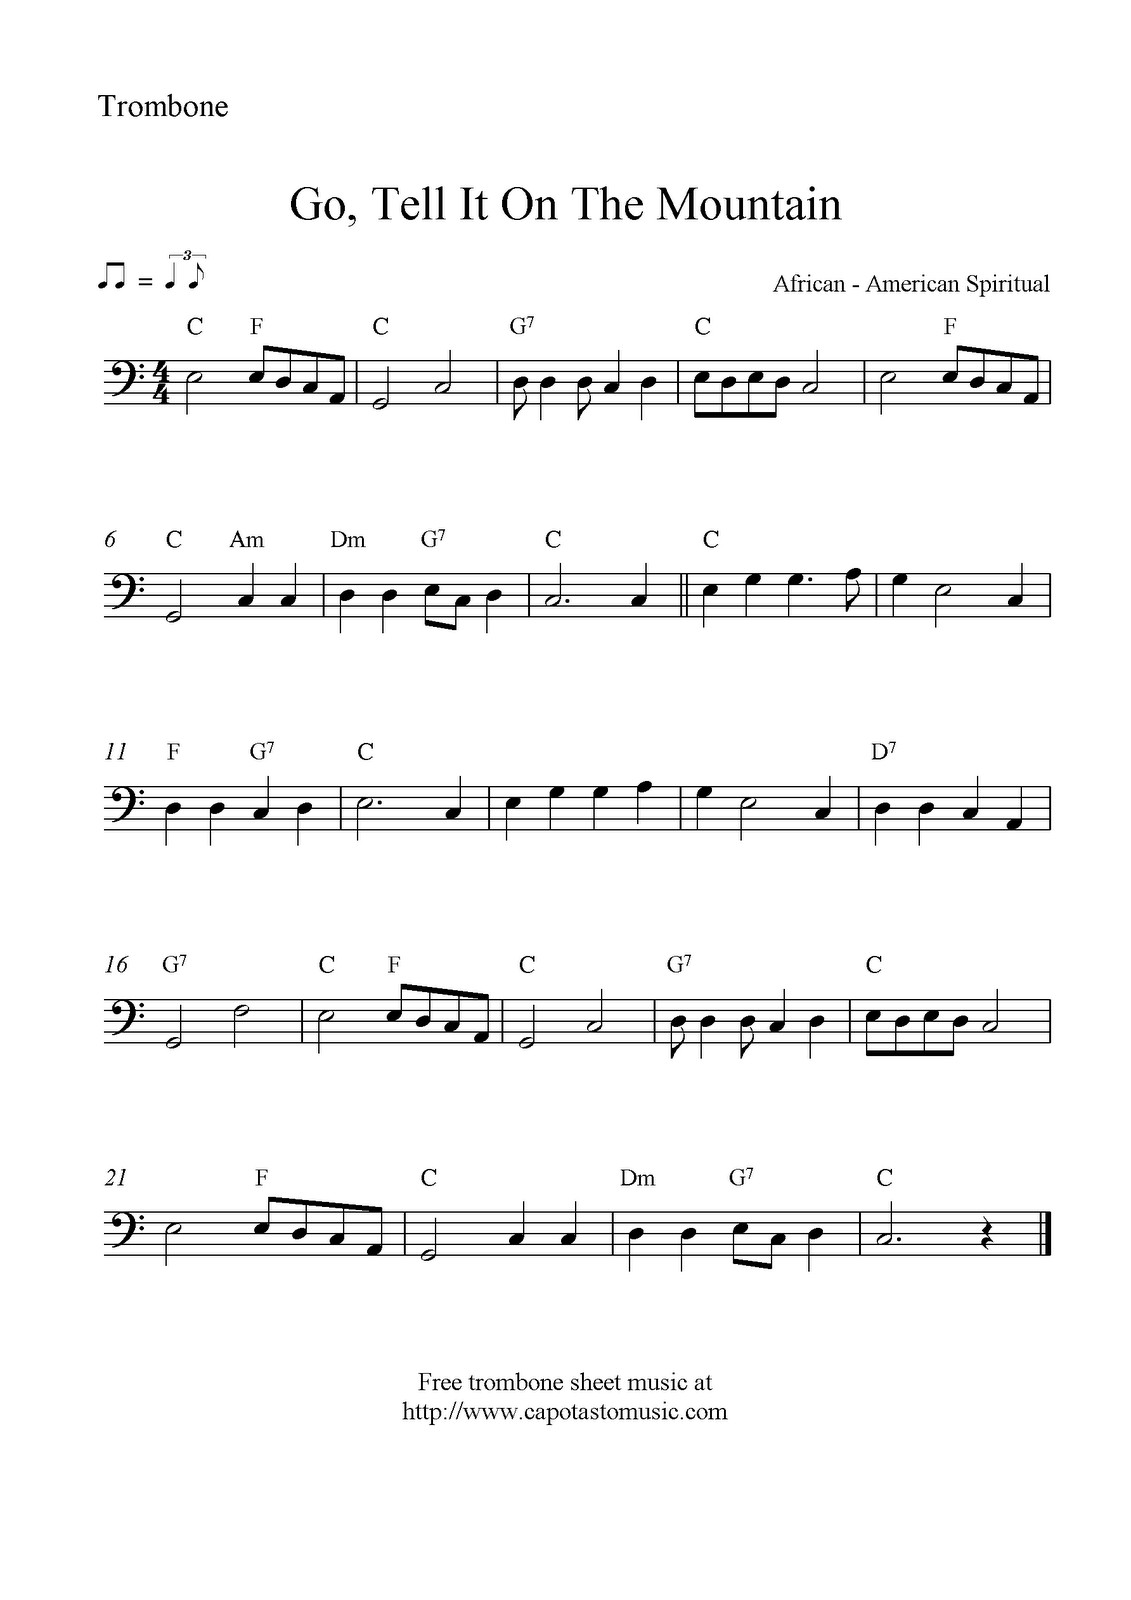 Go, Tell It On The Mountain, Free Christmas Trombone Sheet Music Notes - Trombone Christmas Sheet Music Free Printable